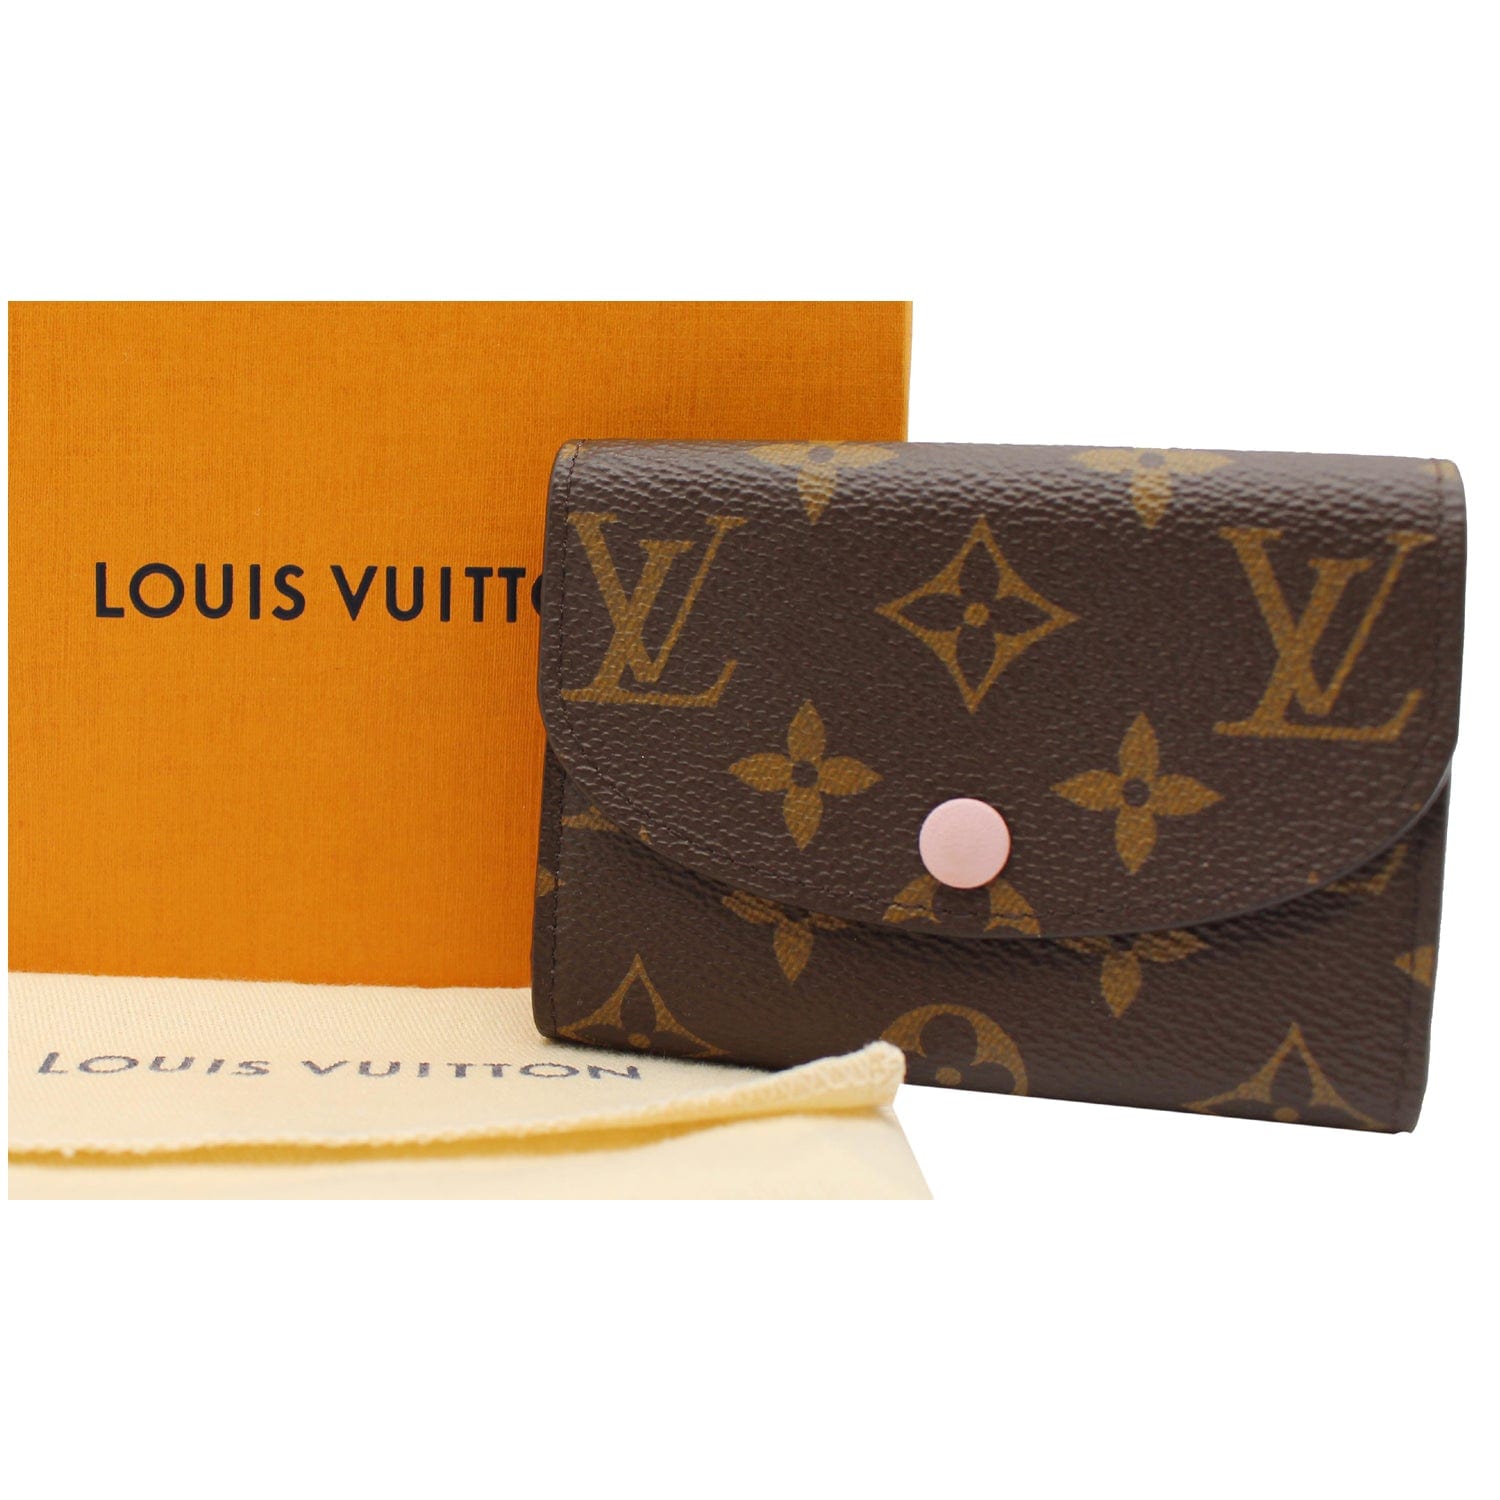 NEW Authentic Louis Vuitton Rosalie Coin Purse Monogram Rose